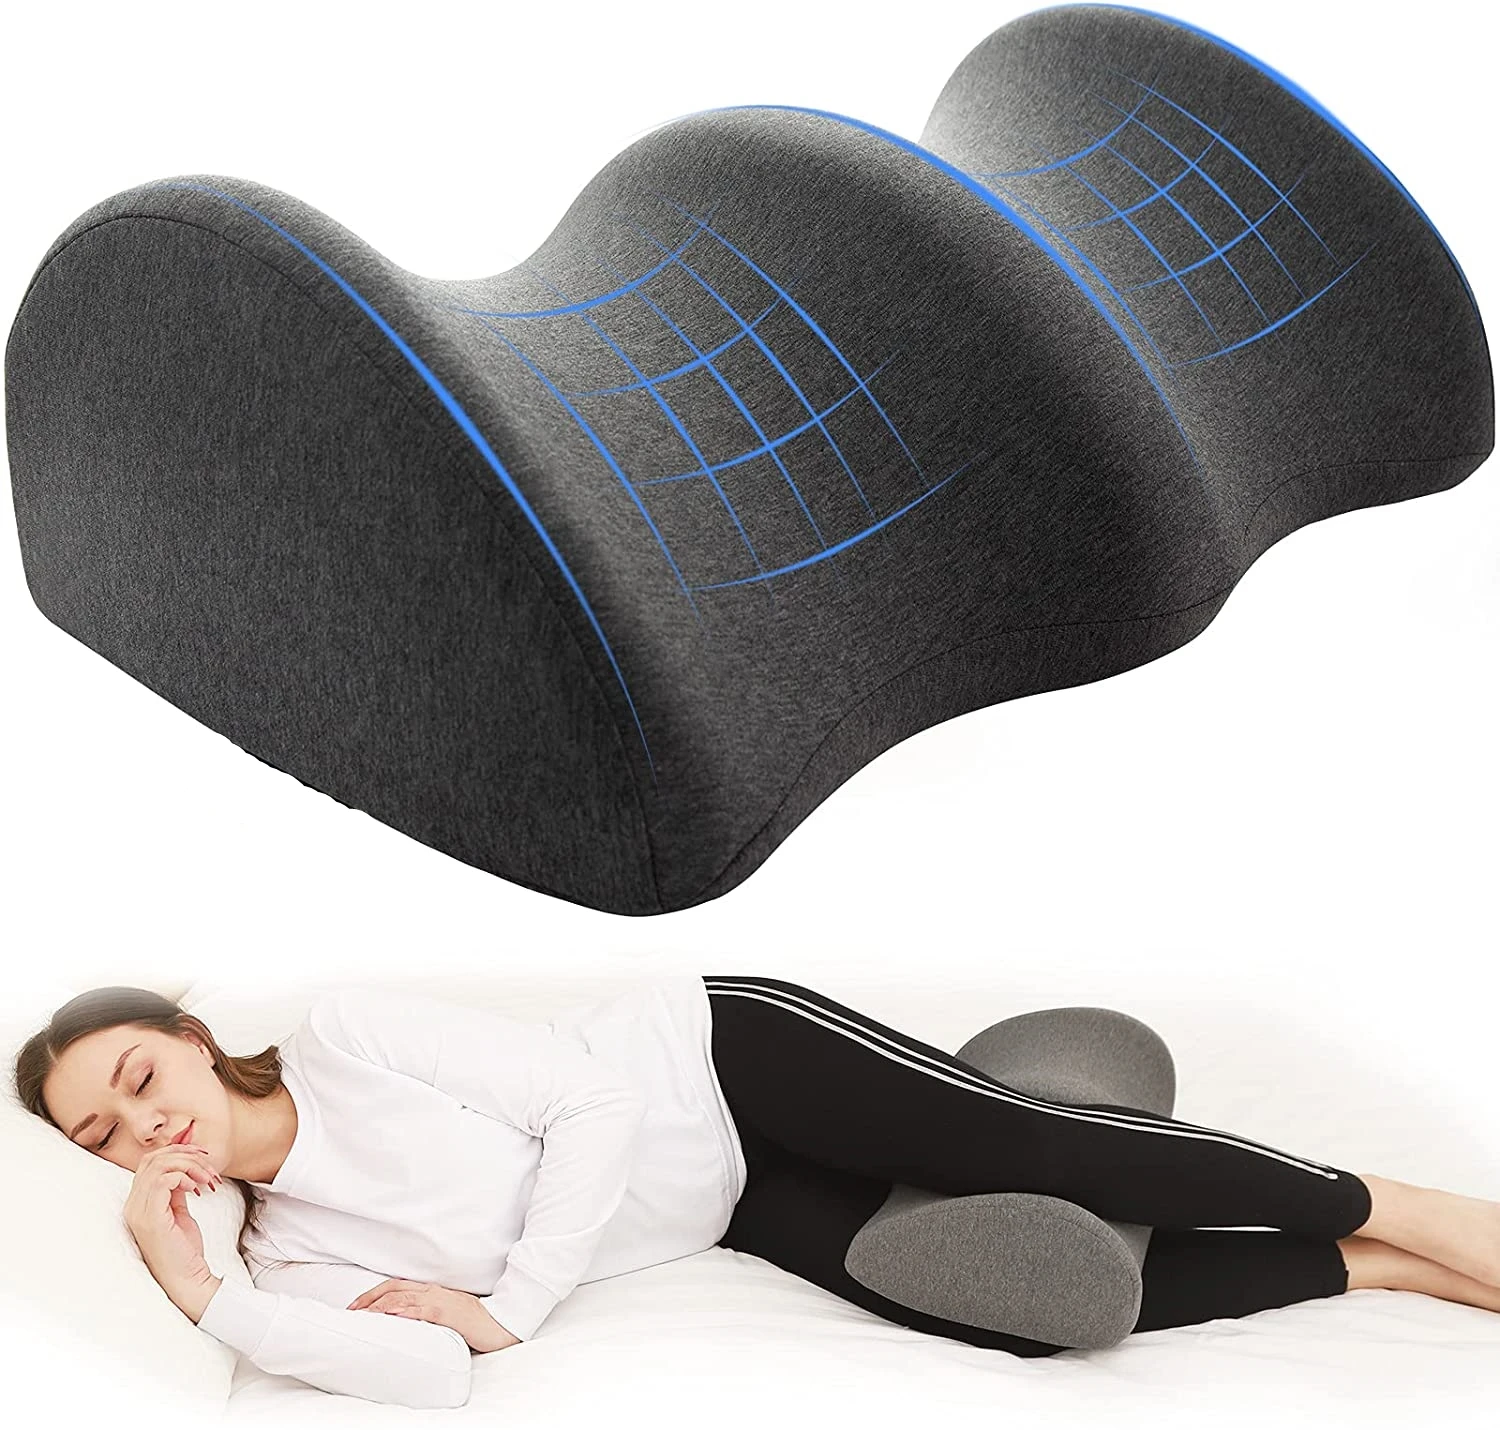 

Подушка для ног для беременных, подушка для талии на колено для сна сбоку, подушка для поддержки колена, подушка для облегчения боли